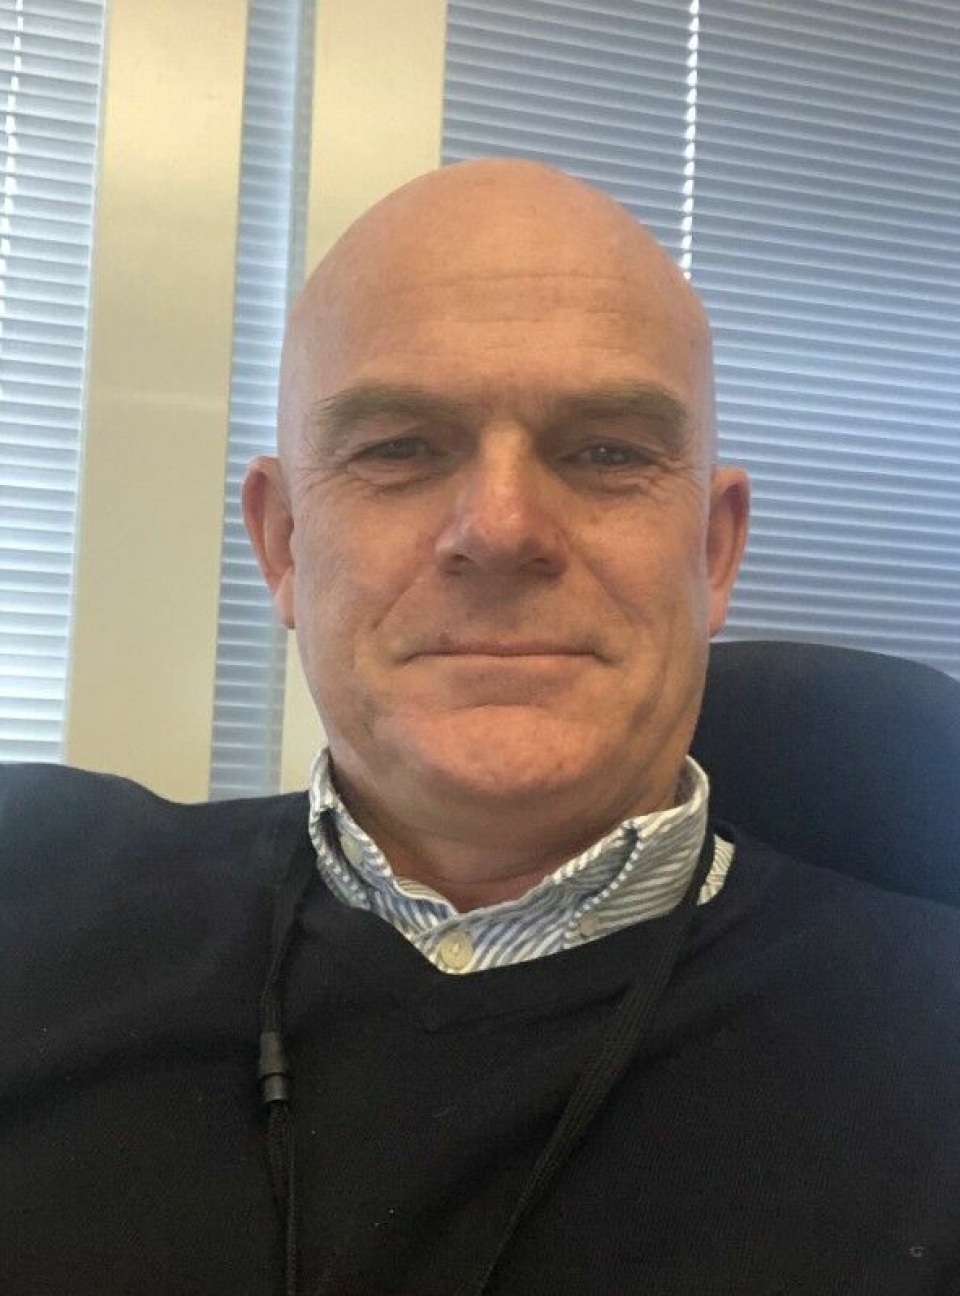 KONTROLL: Daglig leder og kjedeansvarlig i Smarthotel, Kjell Rommetvedt, har vært med i Smarthotel i rundt 20 år.